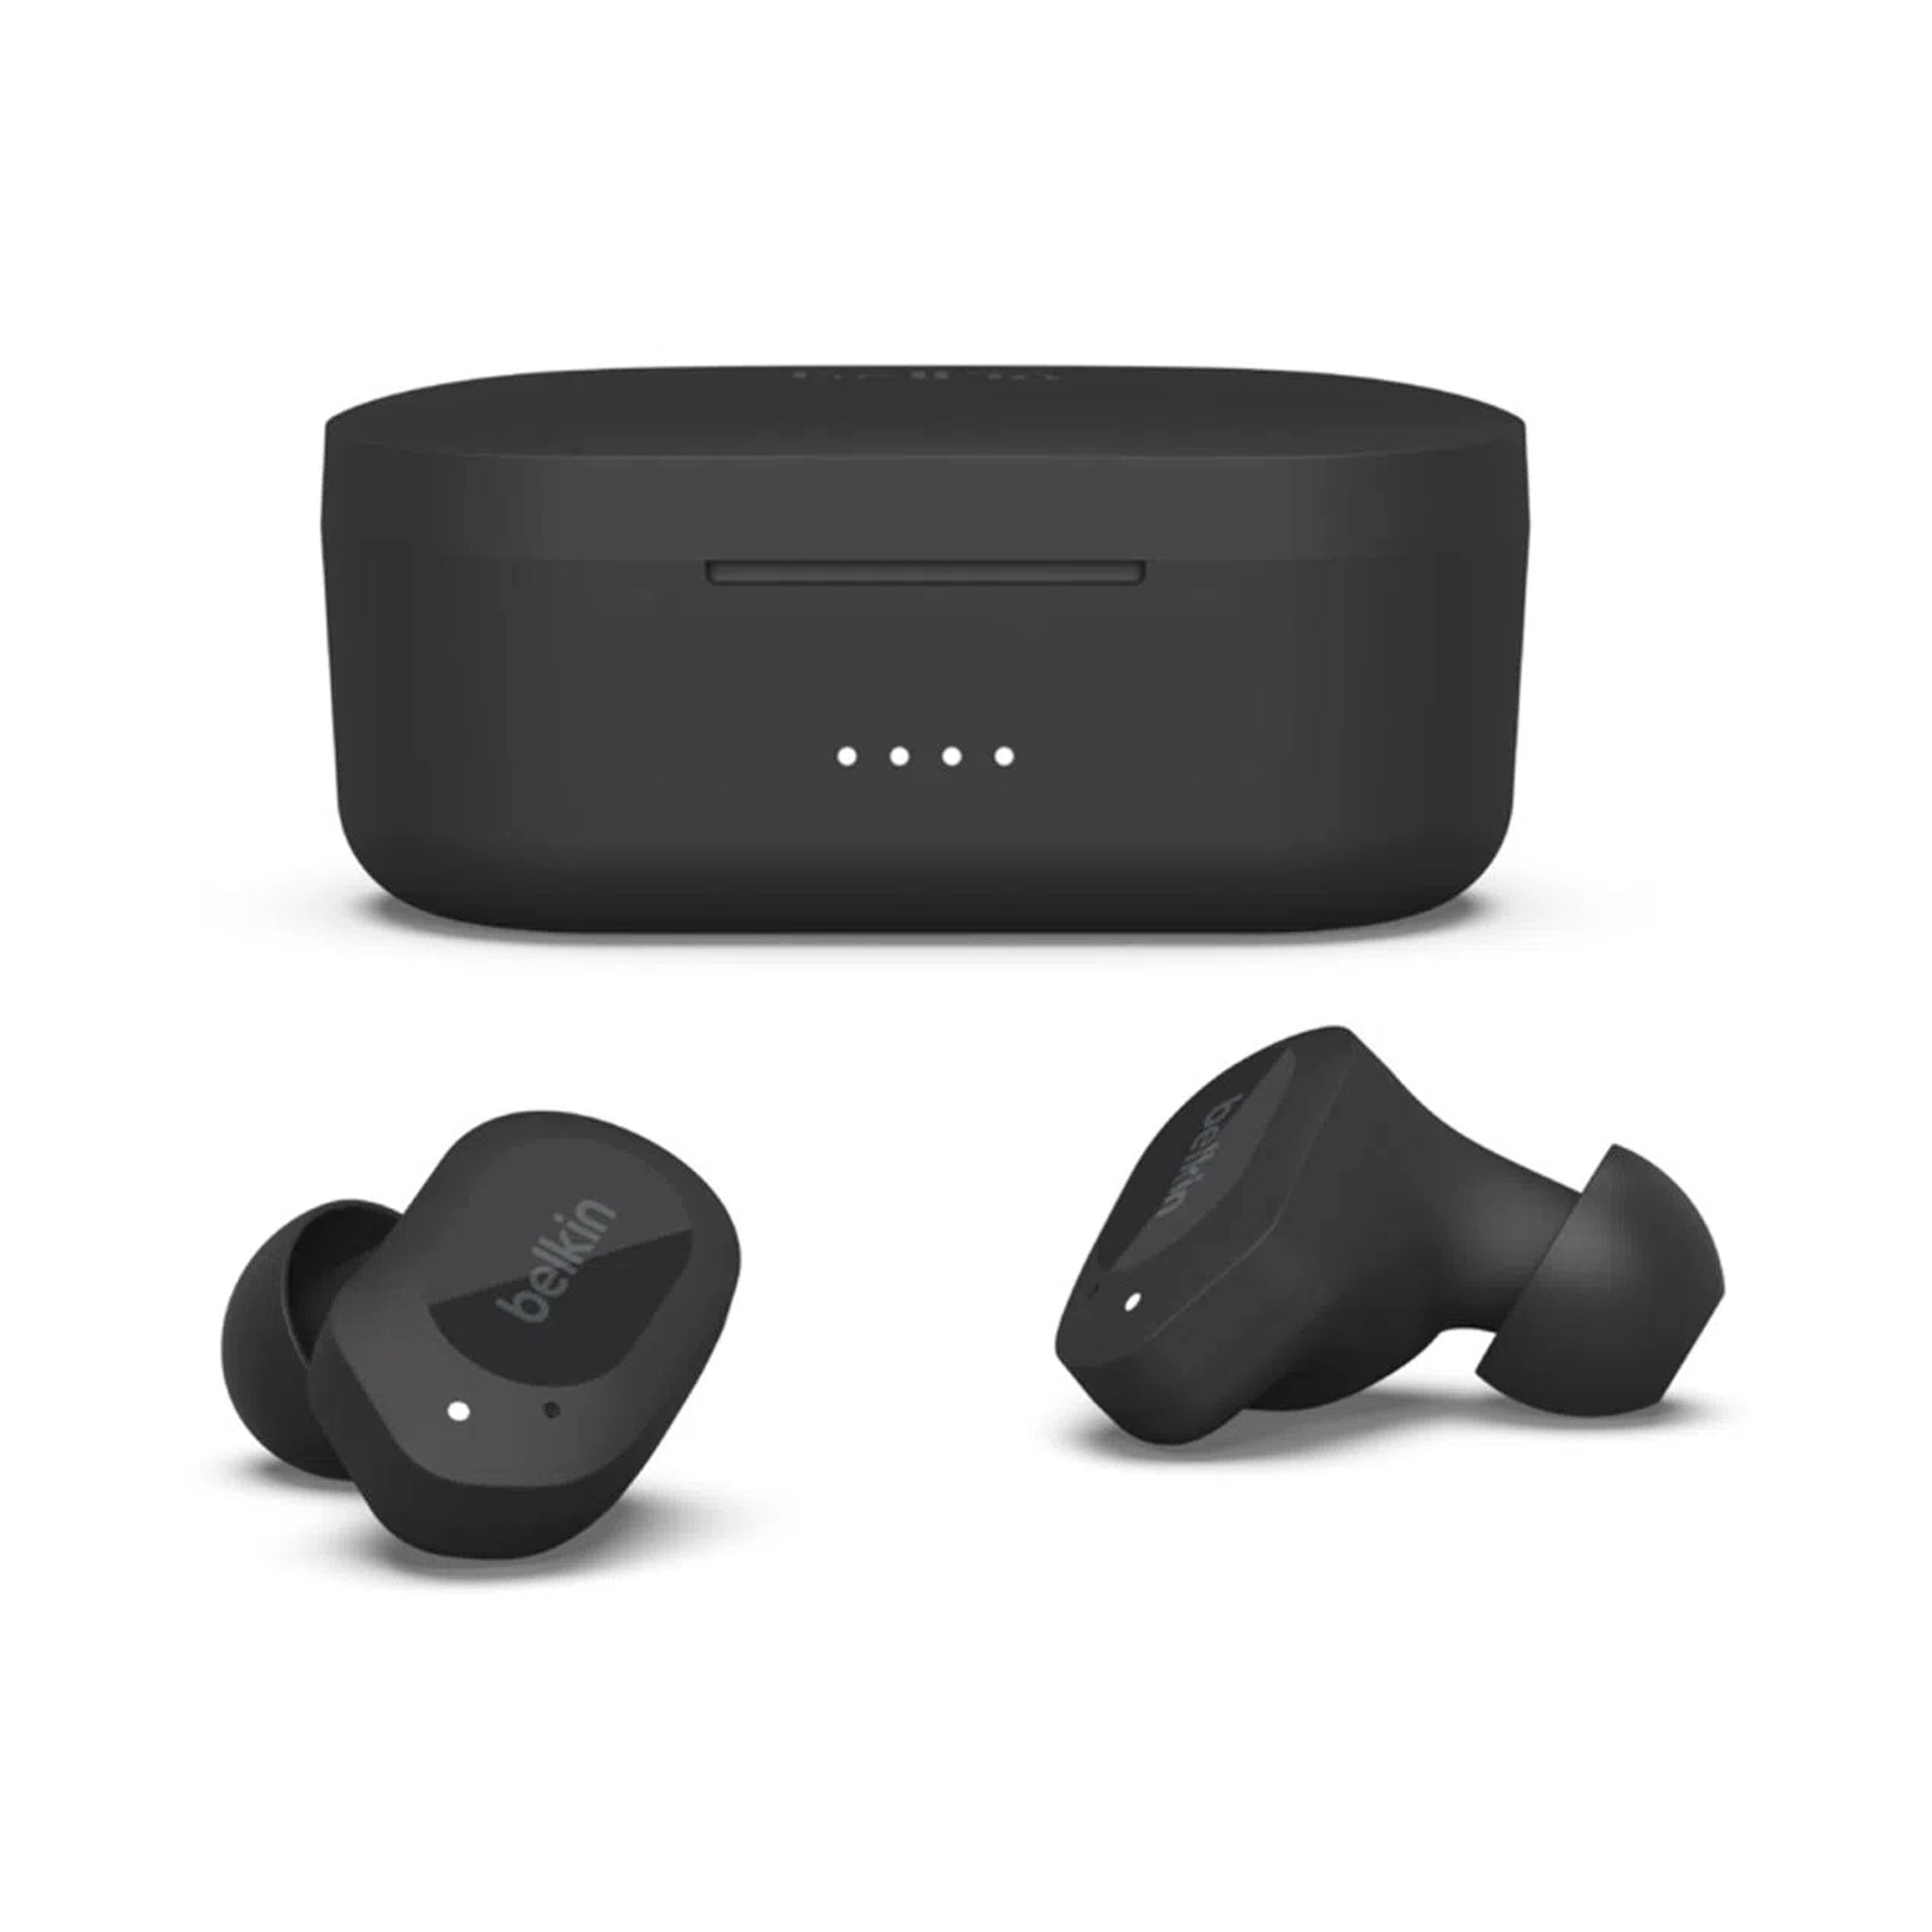 Belkin - Soundform Play True Wireless Earbuds - Black